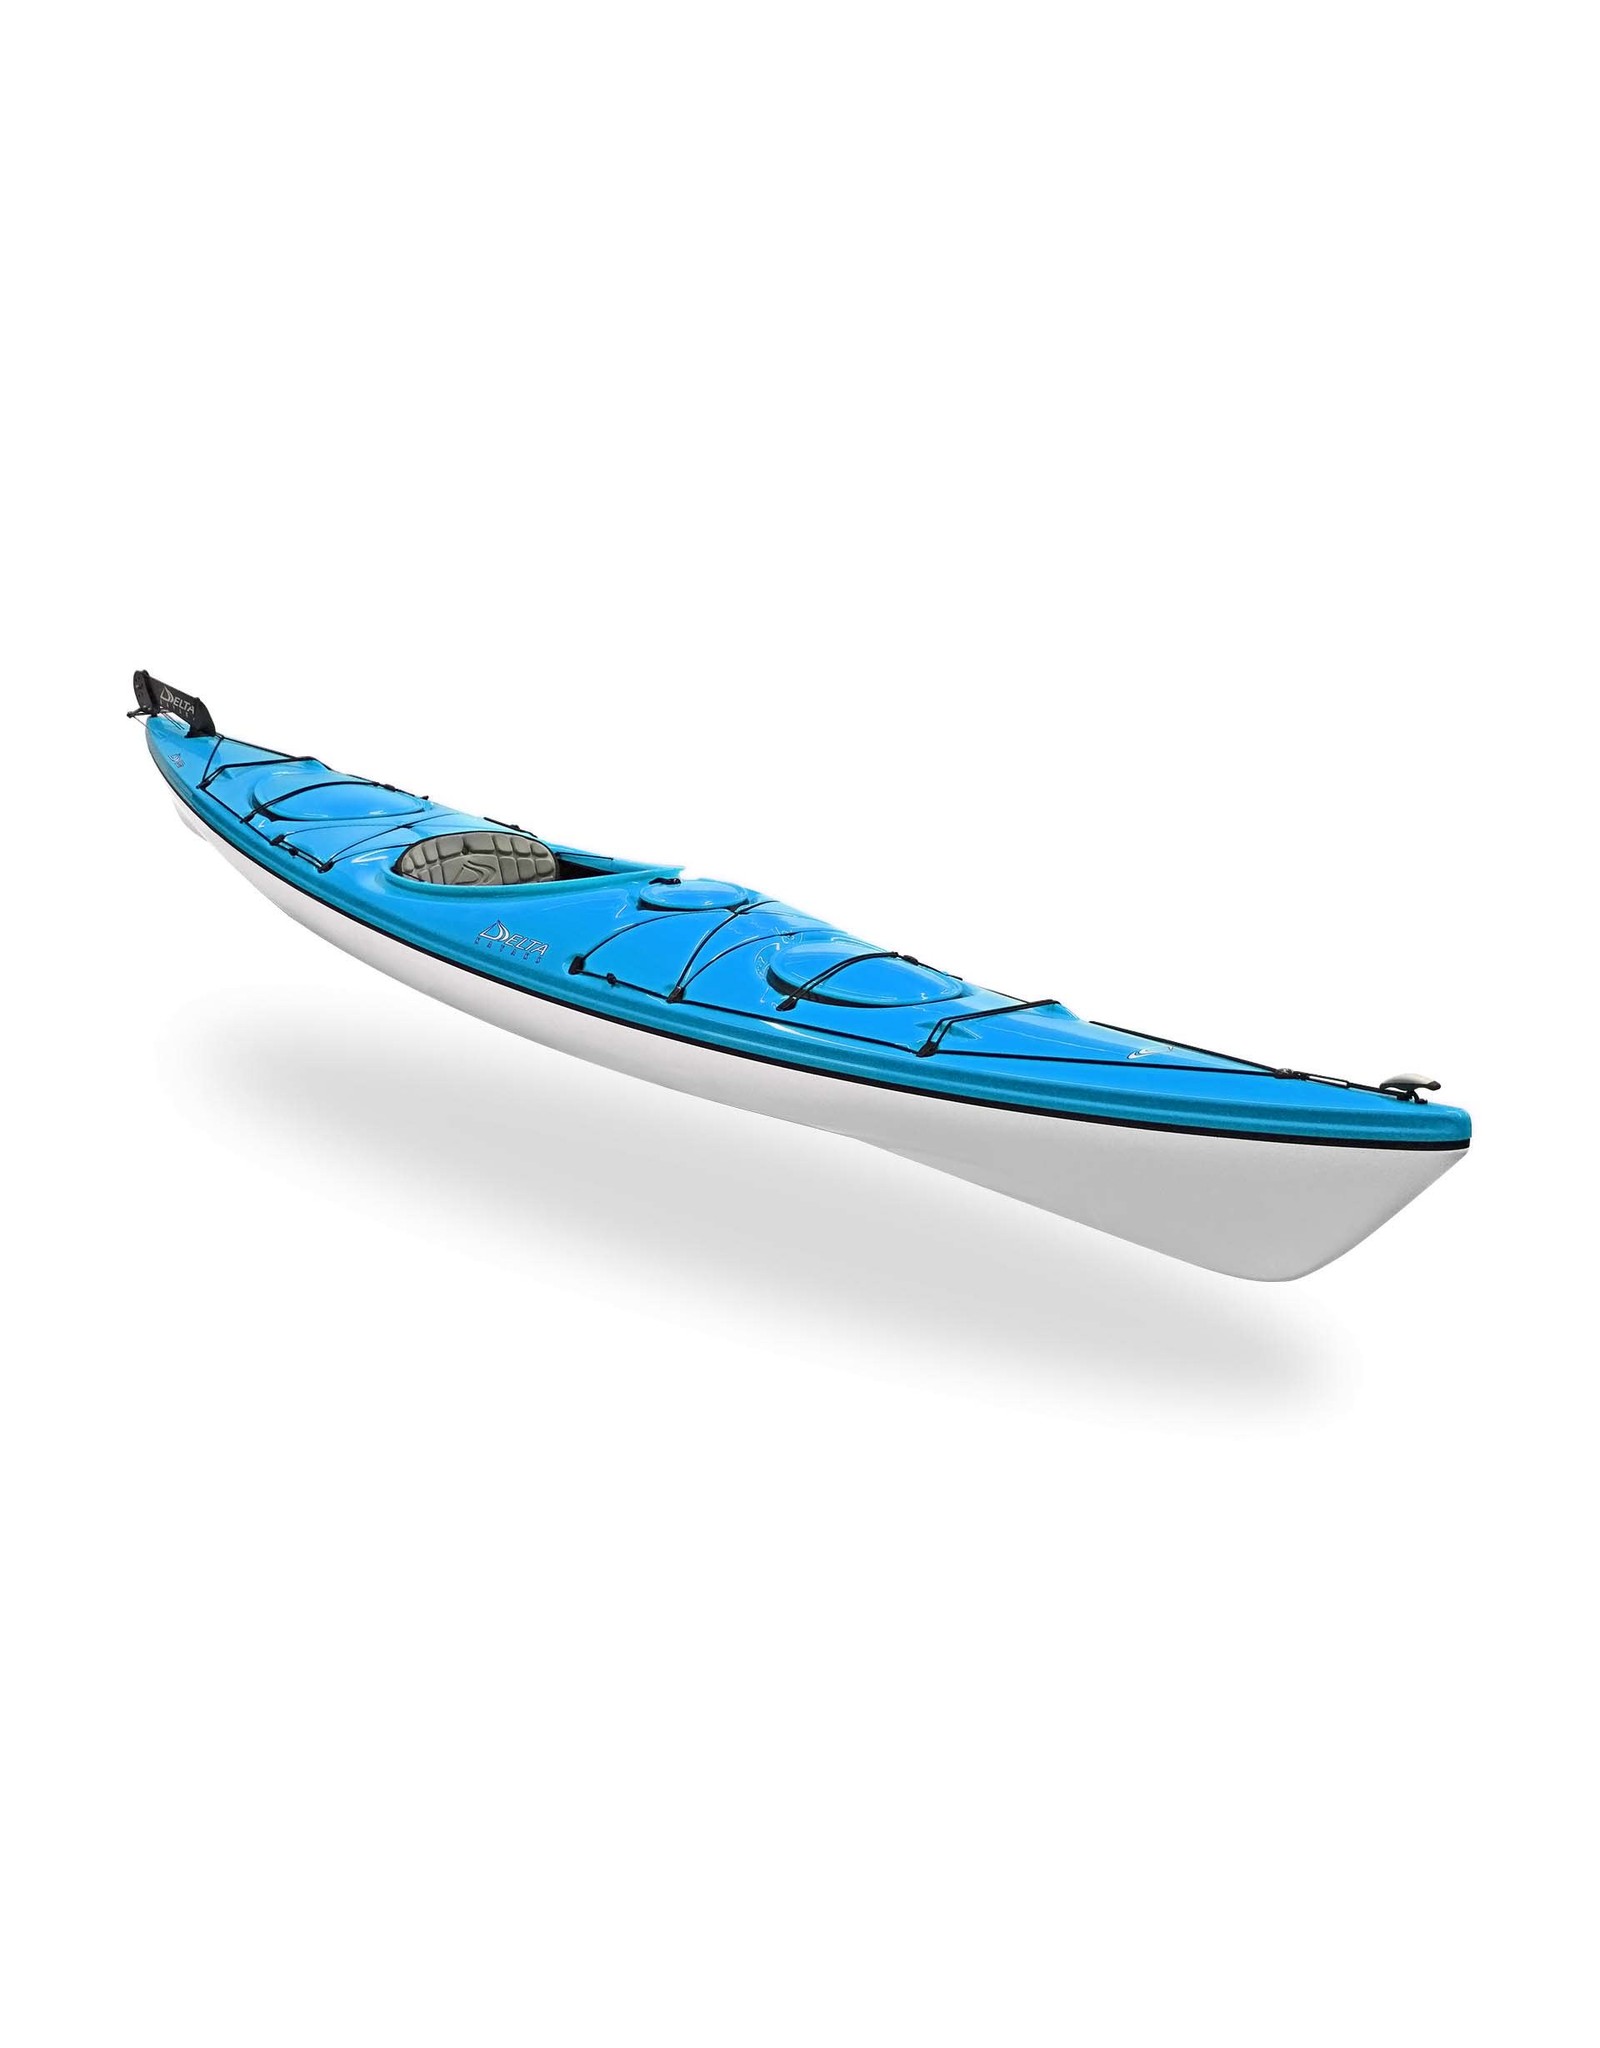 Delta Delta kayak 15.5GT with Rudder